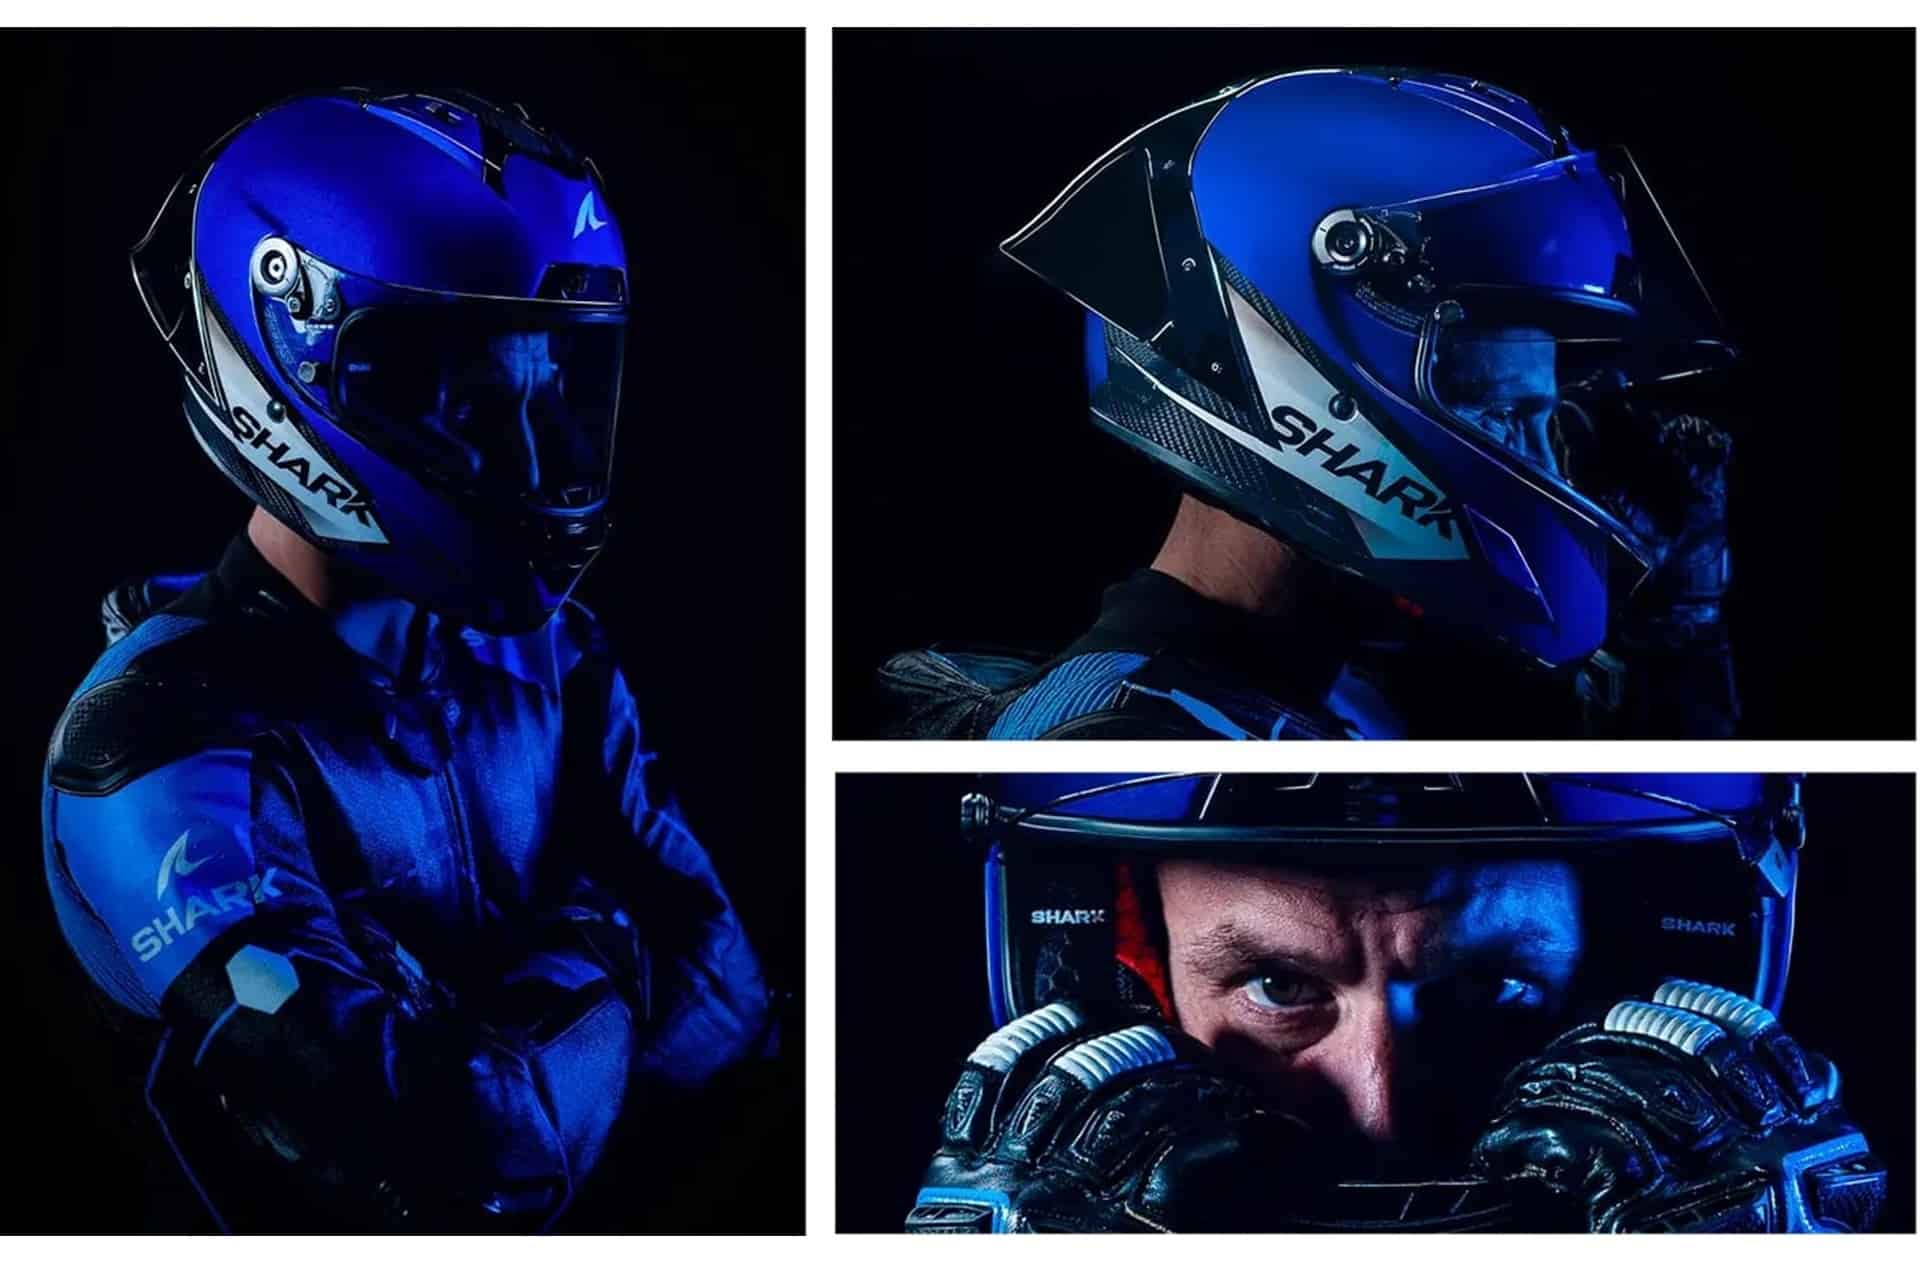 Shark Aeron GP: El nuevo casco de la marca francesa dotado de aerodinámica activa